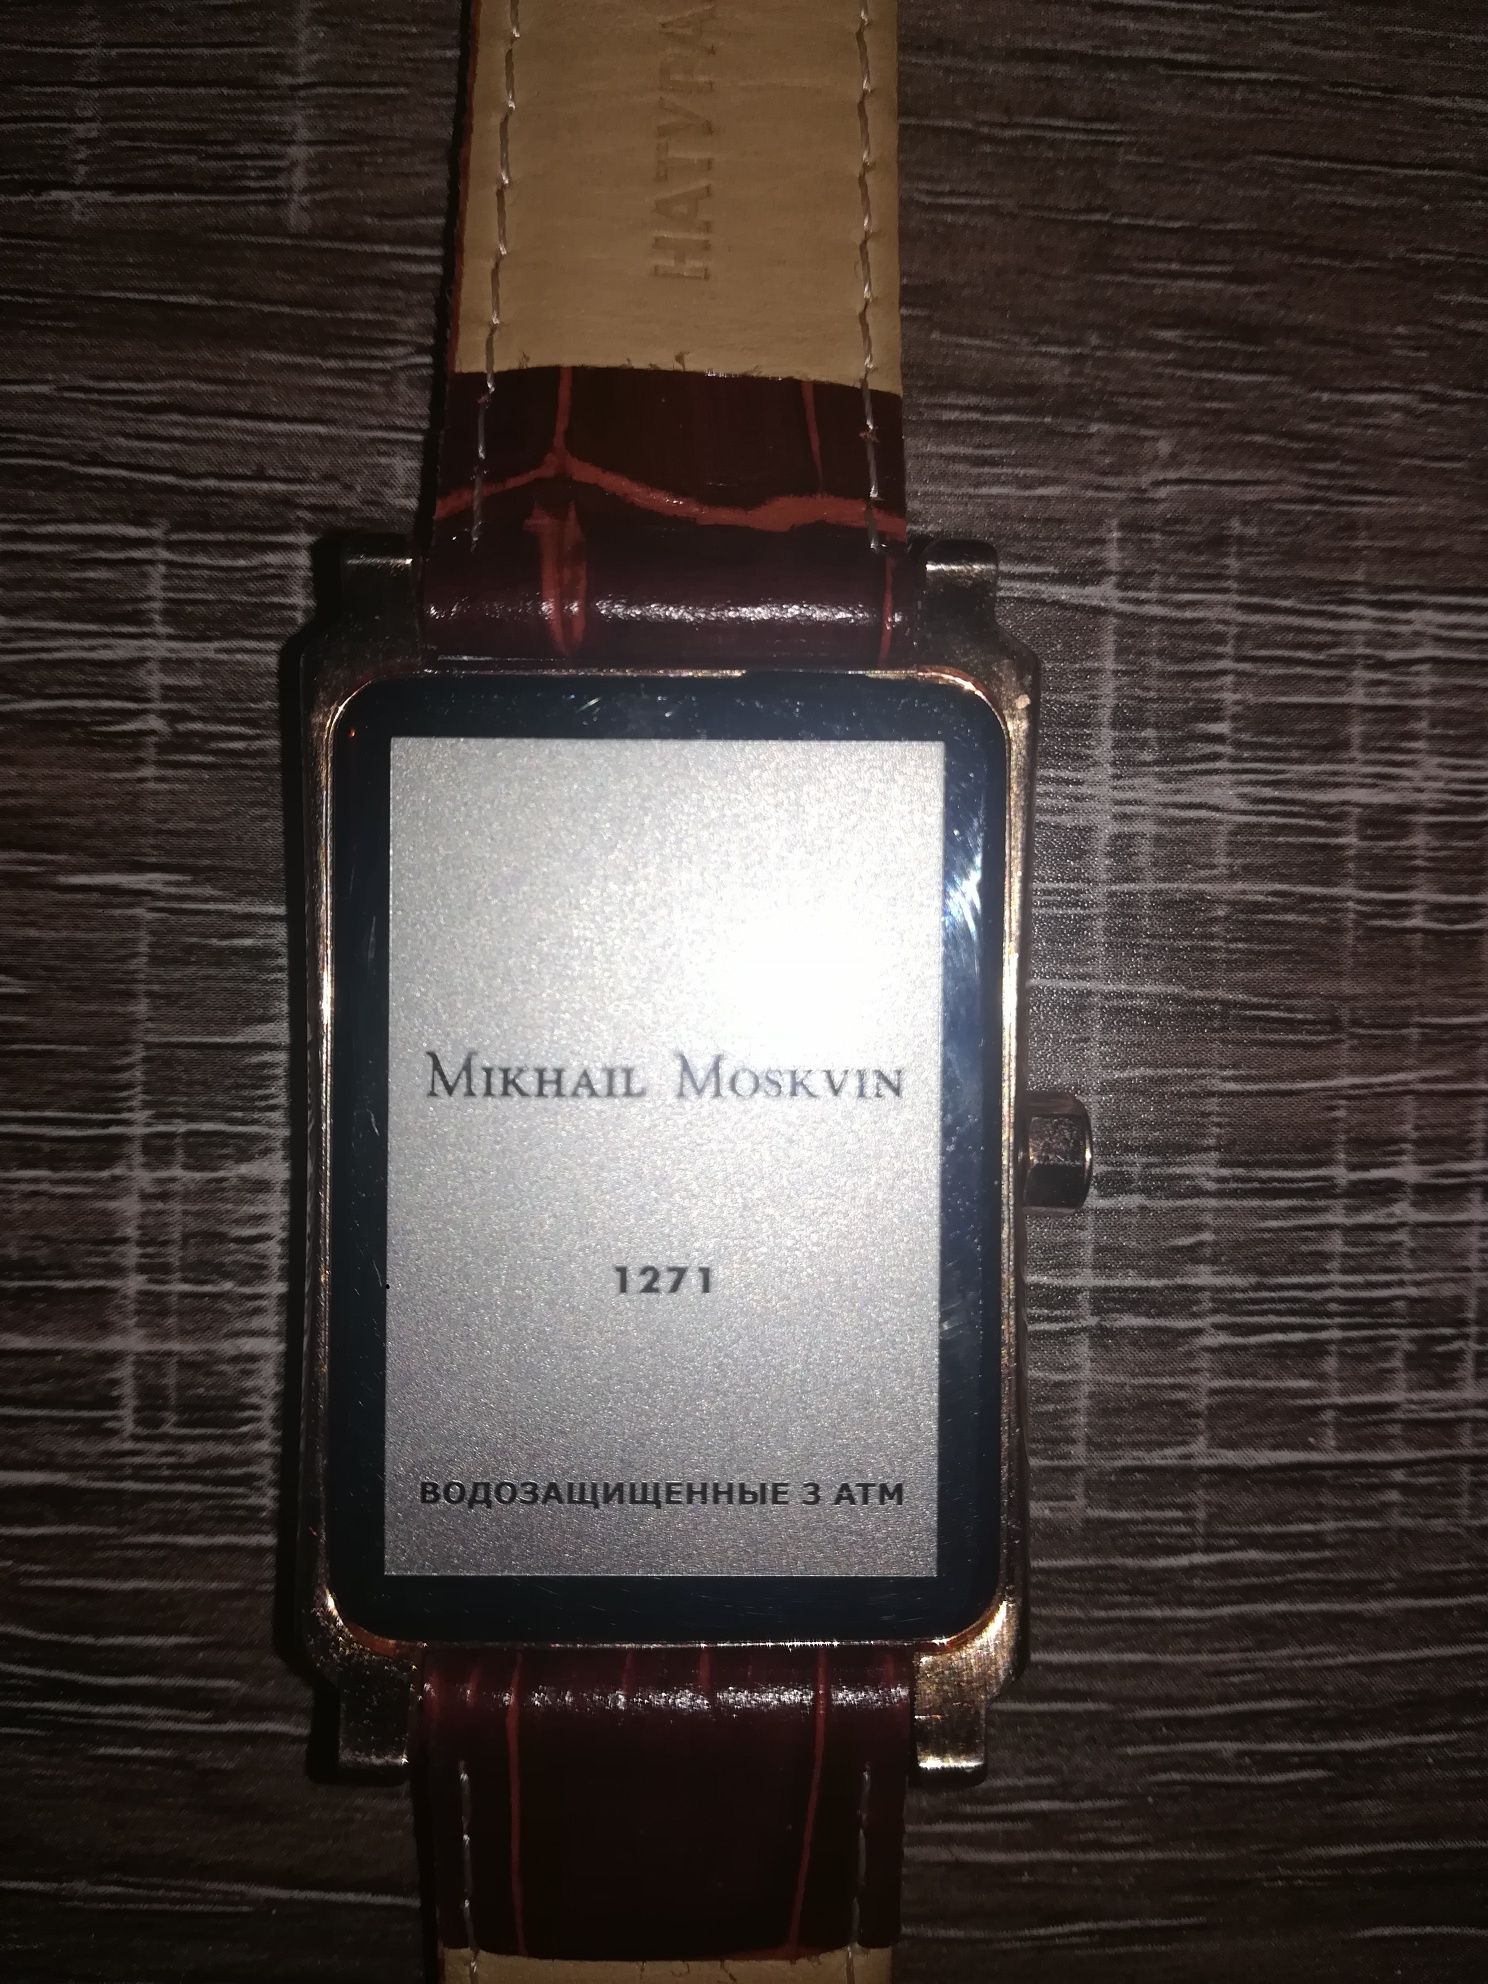 Часы Mikhail Moskvin кварц. Сделано в России. Водозащитные 3 атм.